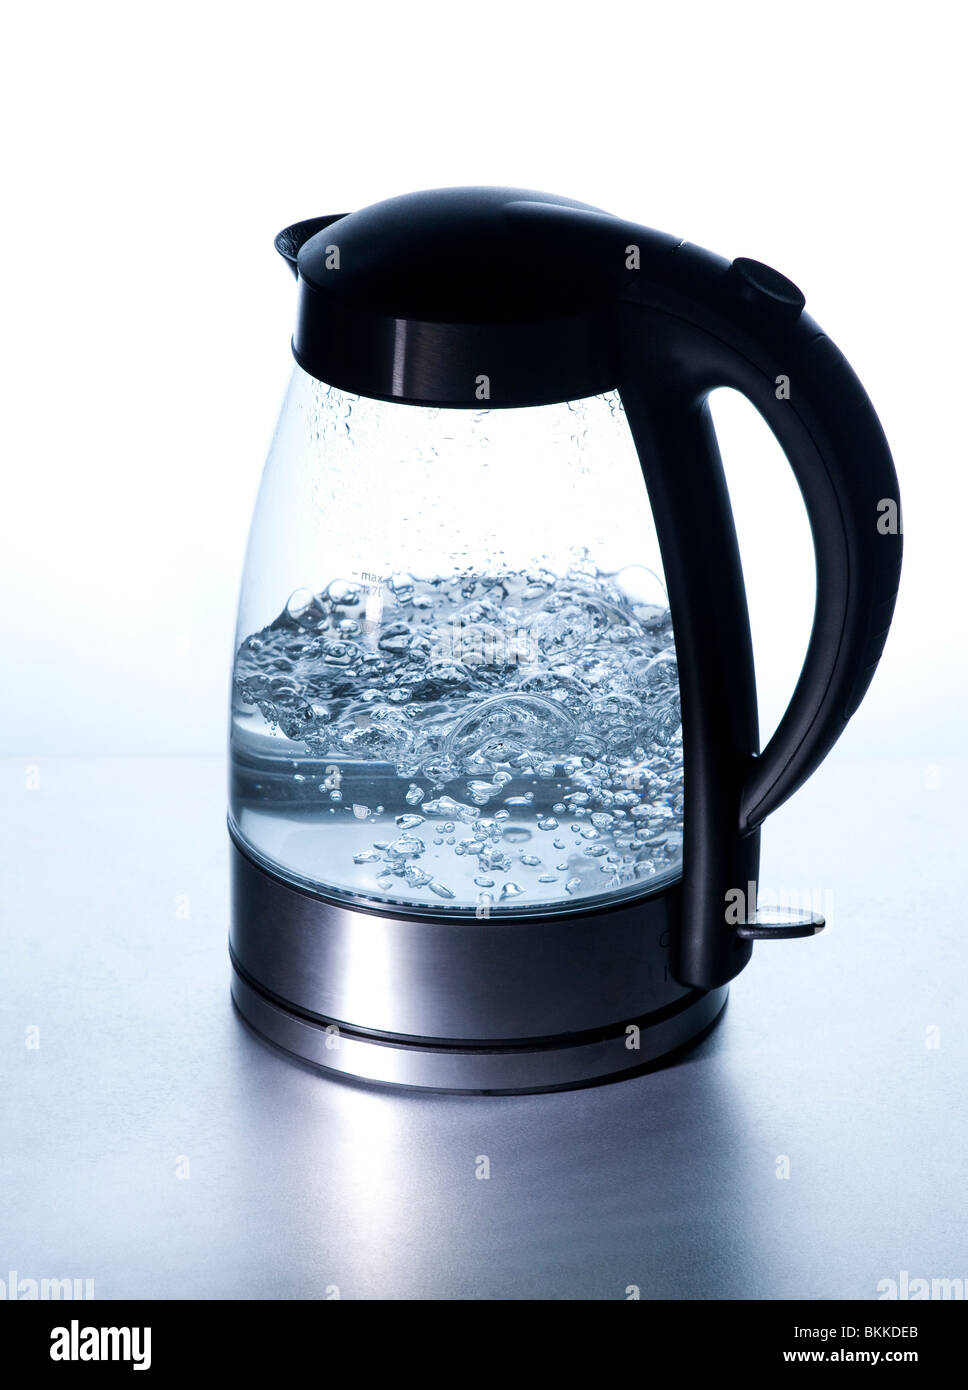 moderne Wasserkocher kochendes Wasser mit hitzebeständigen Borosilikatglas  Schott Duran Stockfotografie - Alamy